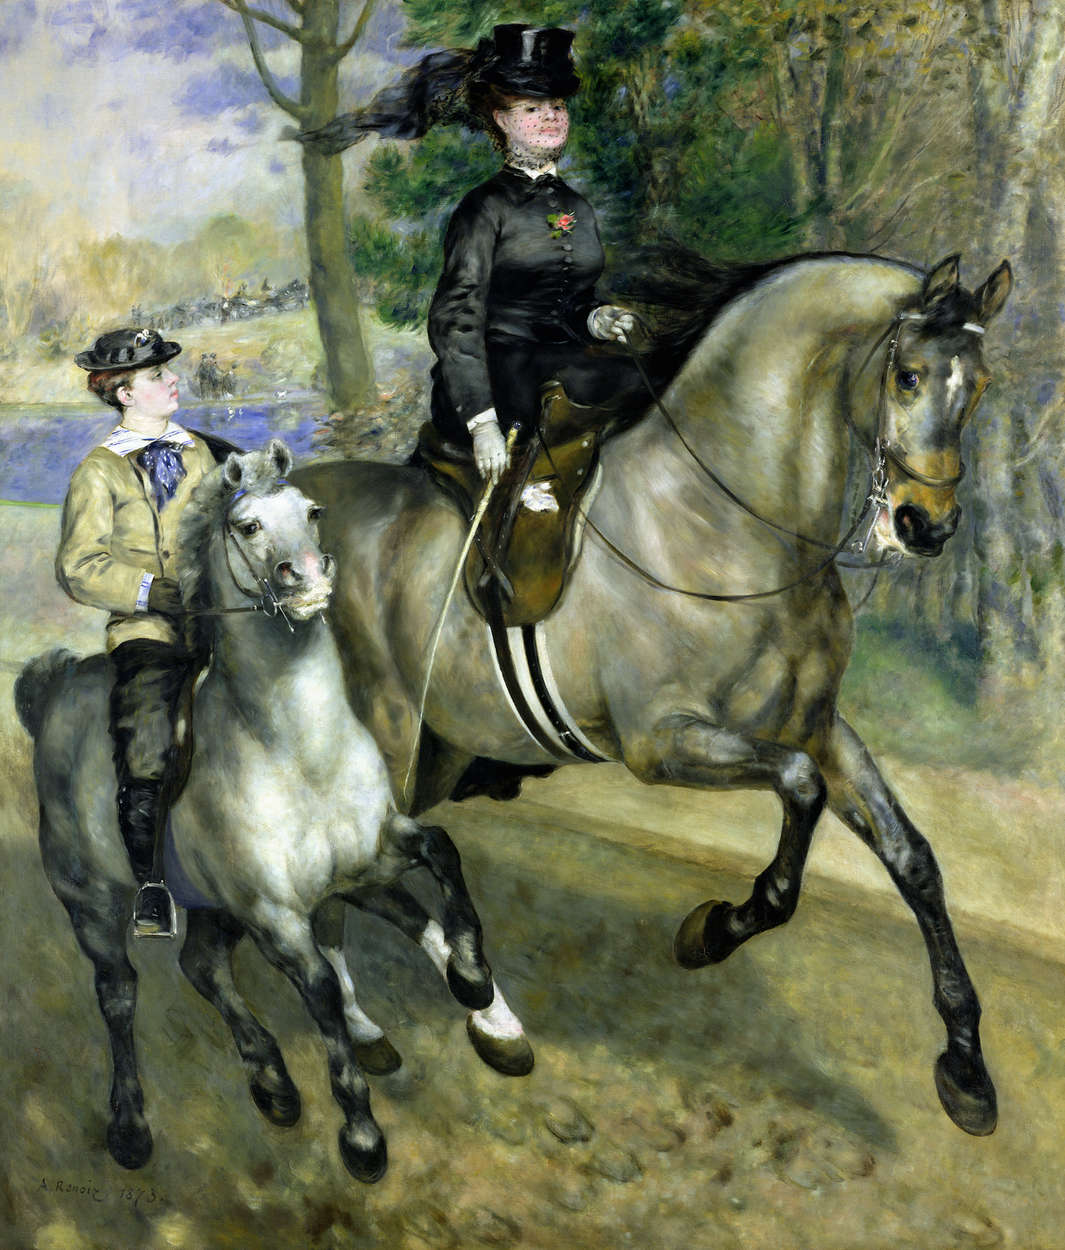             Mural "Jinete en el bosque de Boulogne" de Pierre Auguste Renoir
        